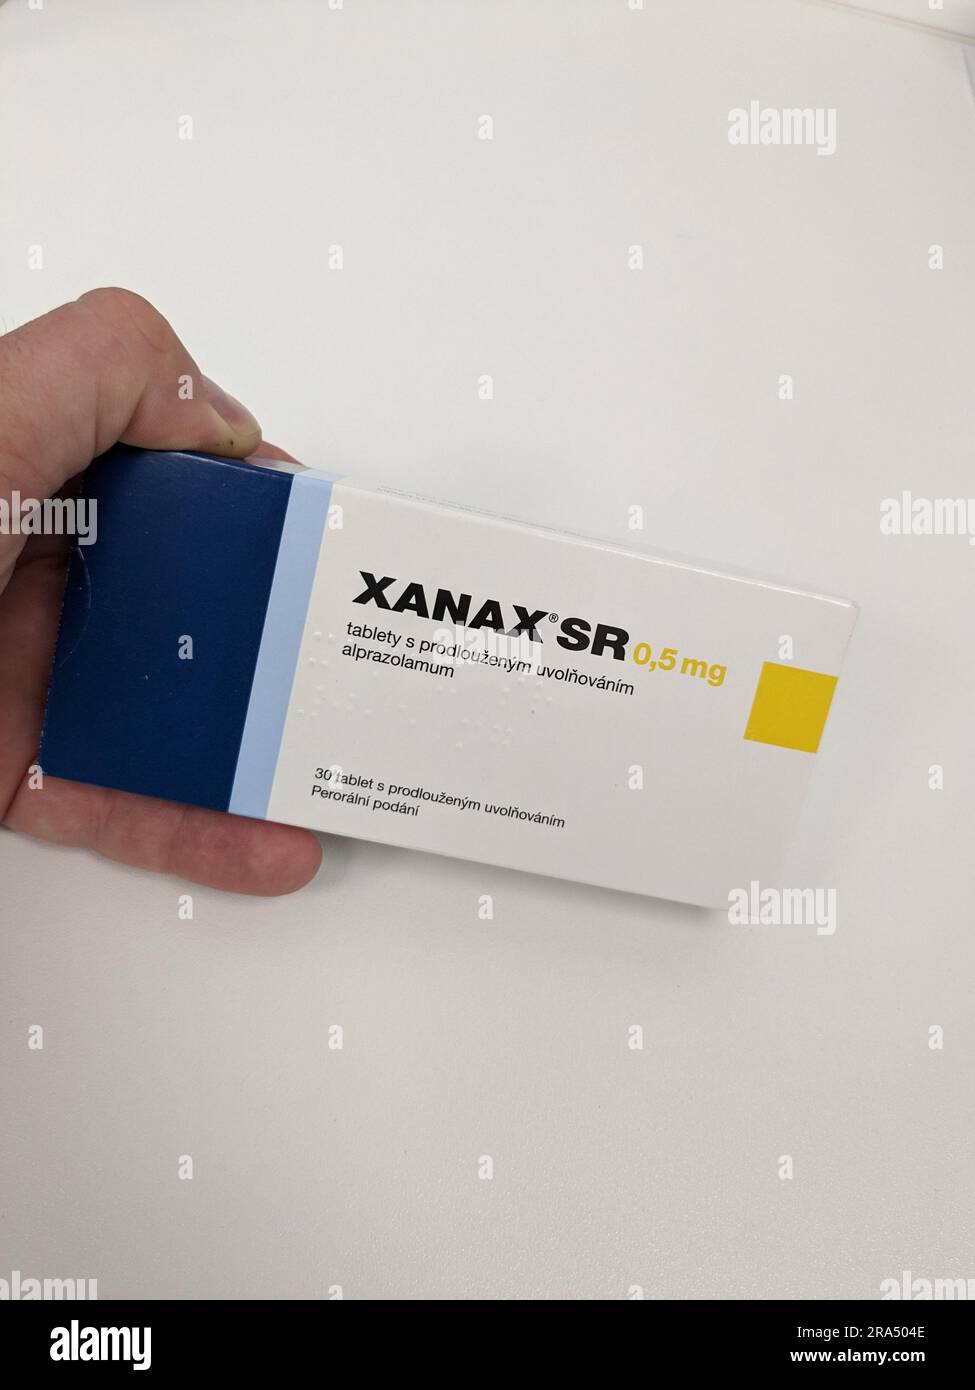 Pillole di Xanax con principio attivo Alprazolam, farmaci ansiolitici  anti-depressivi terapia, è popolare droga da abuso e ha valore di strada  Pfizer Foto stock - Alamy